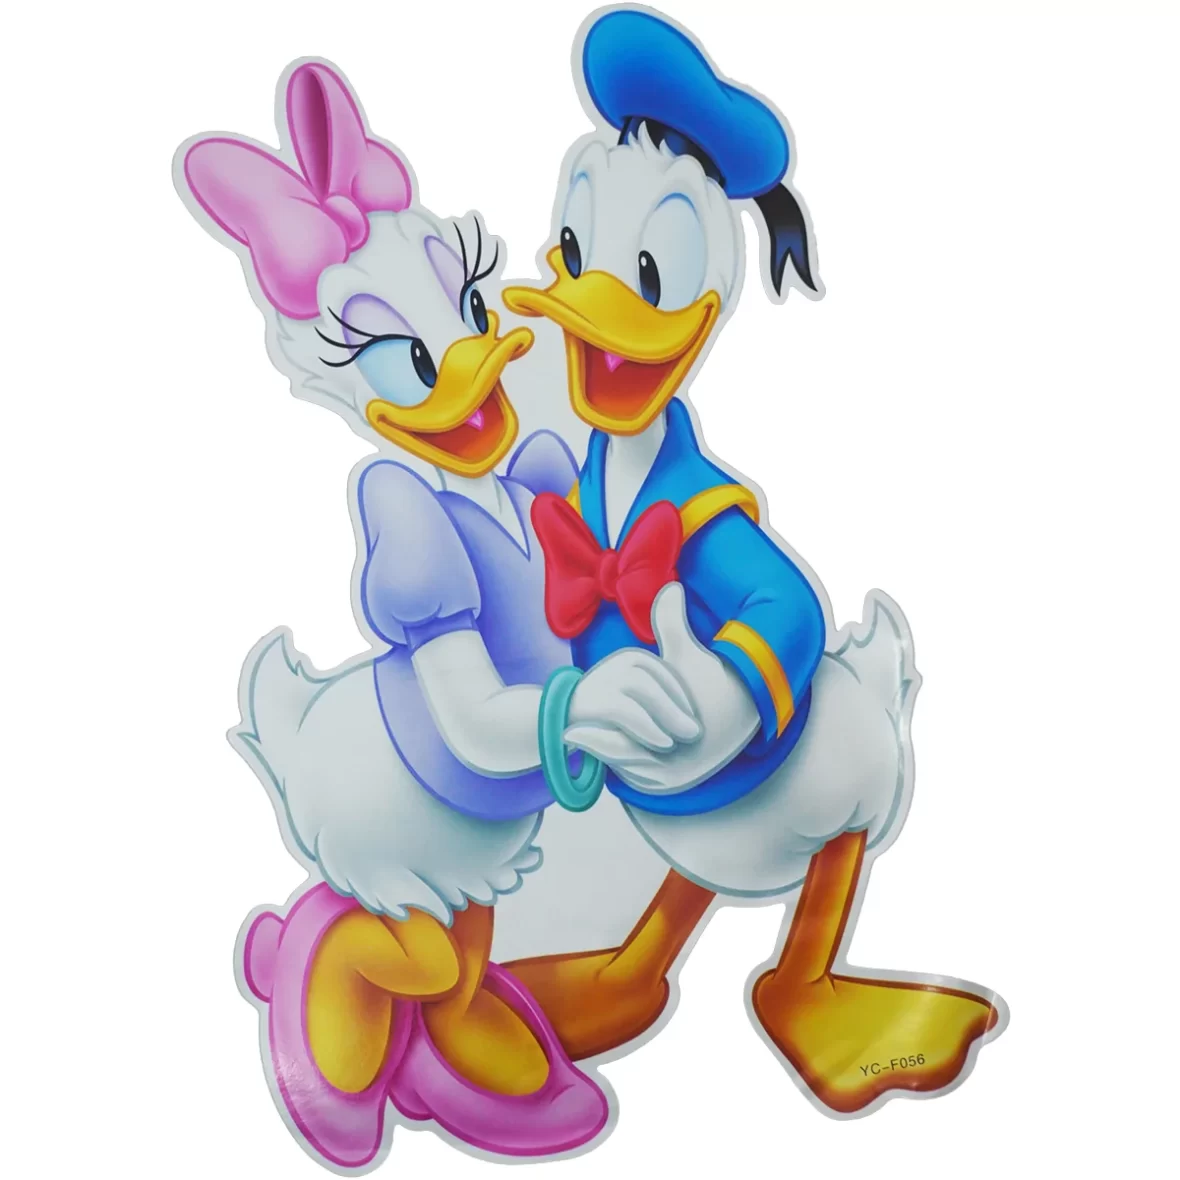 Sticker Donald si Daisy Duck, 20×30 cm